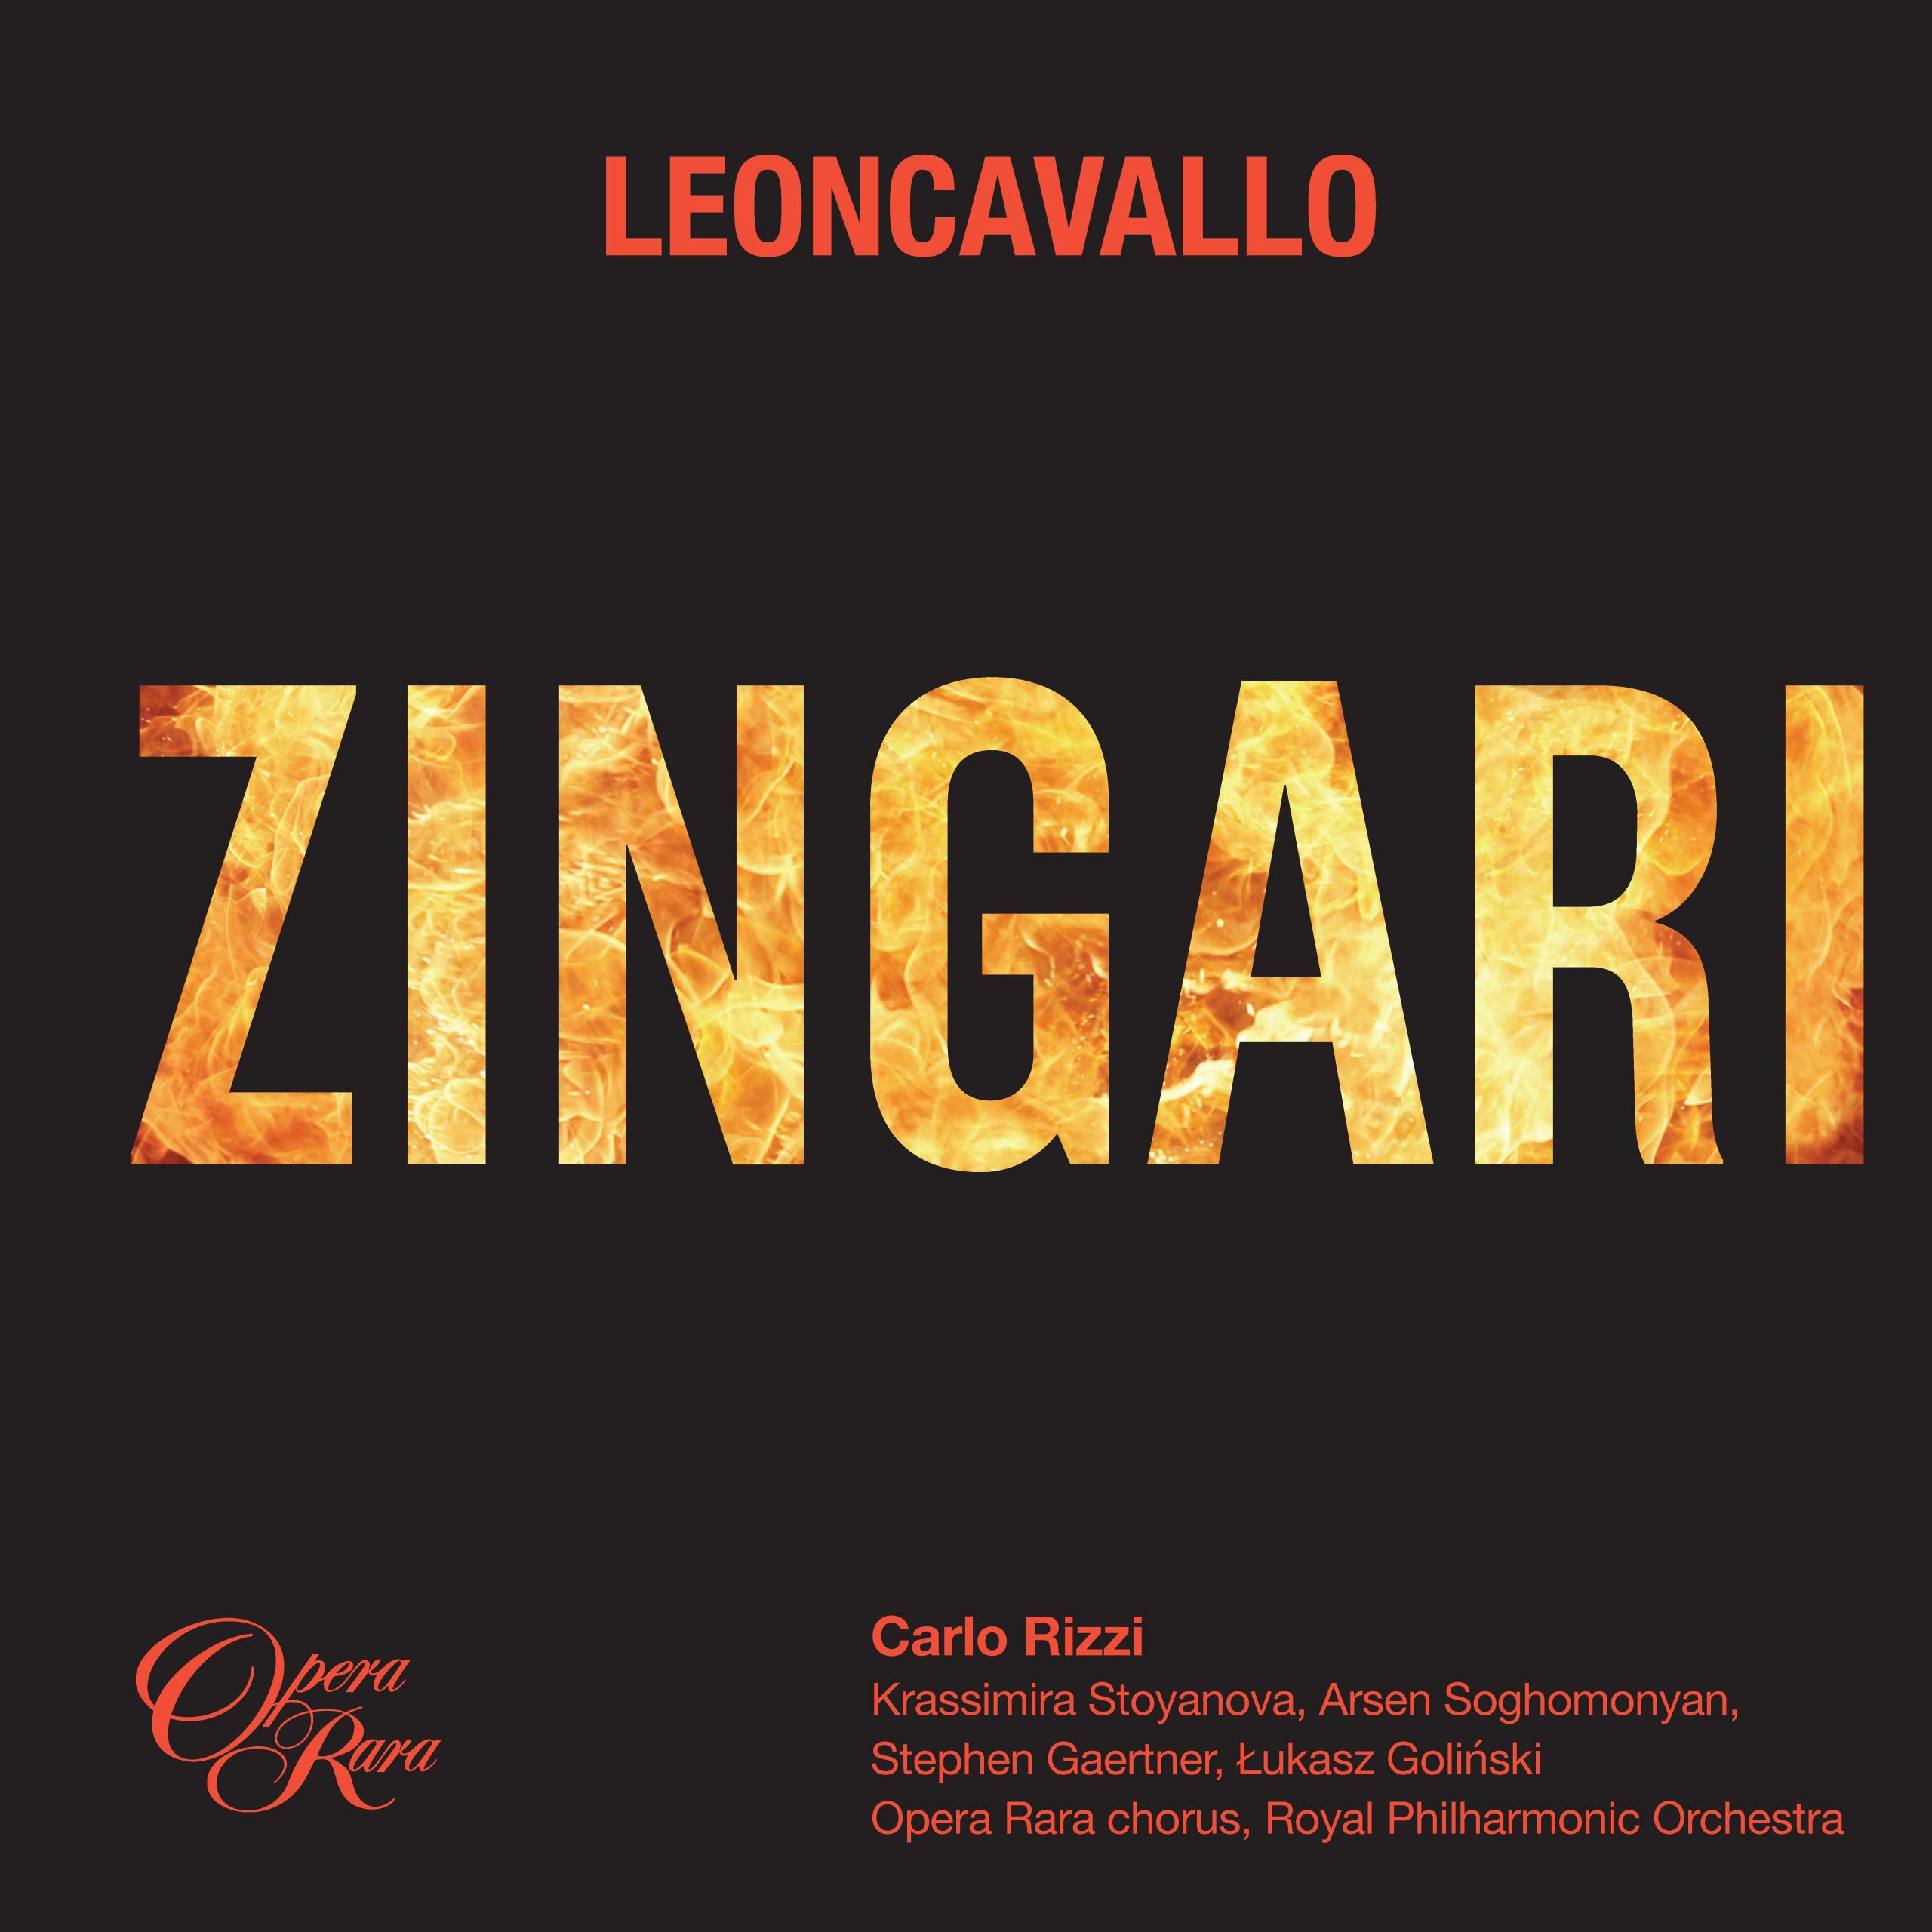 Leoncavallos „Zingari“ sind eine lohnende Wiederentdeckung